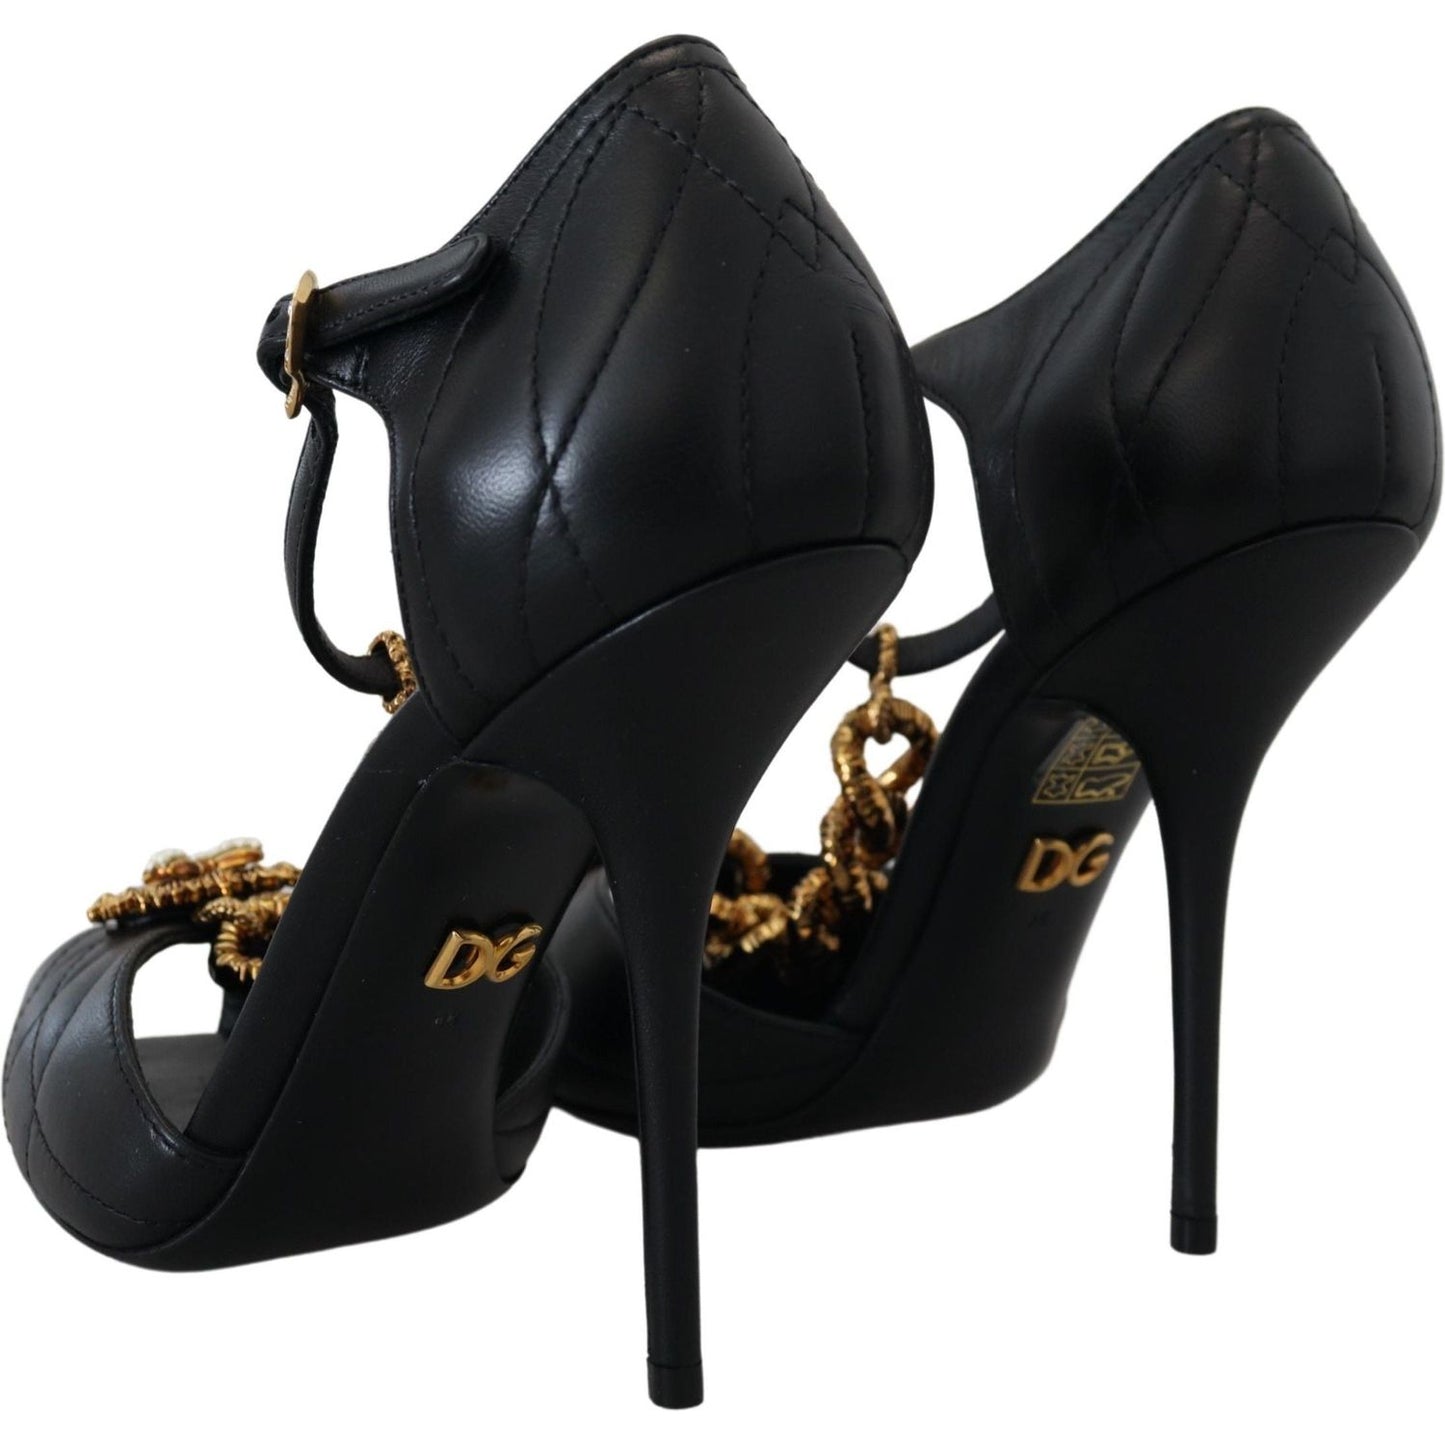 Dolce & GabbanaElegant Gold-Embellished Leather SandalsMcRichard Designer Brands£639.00